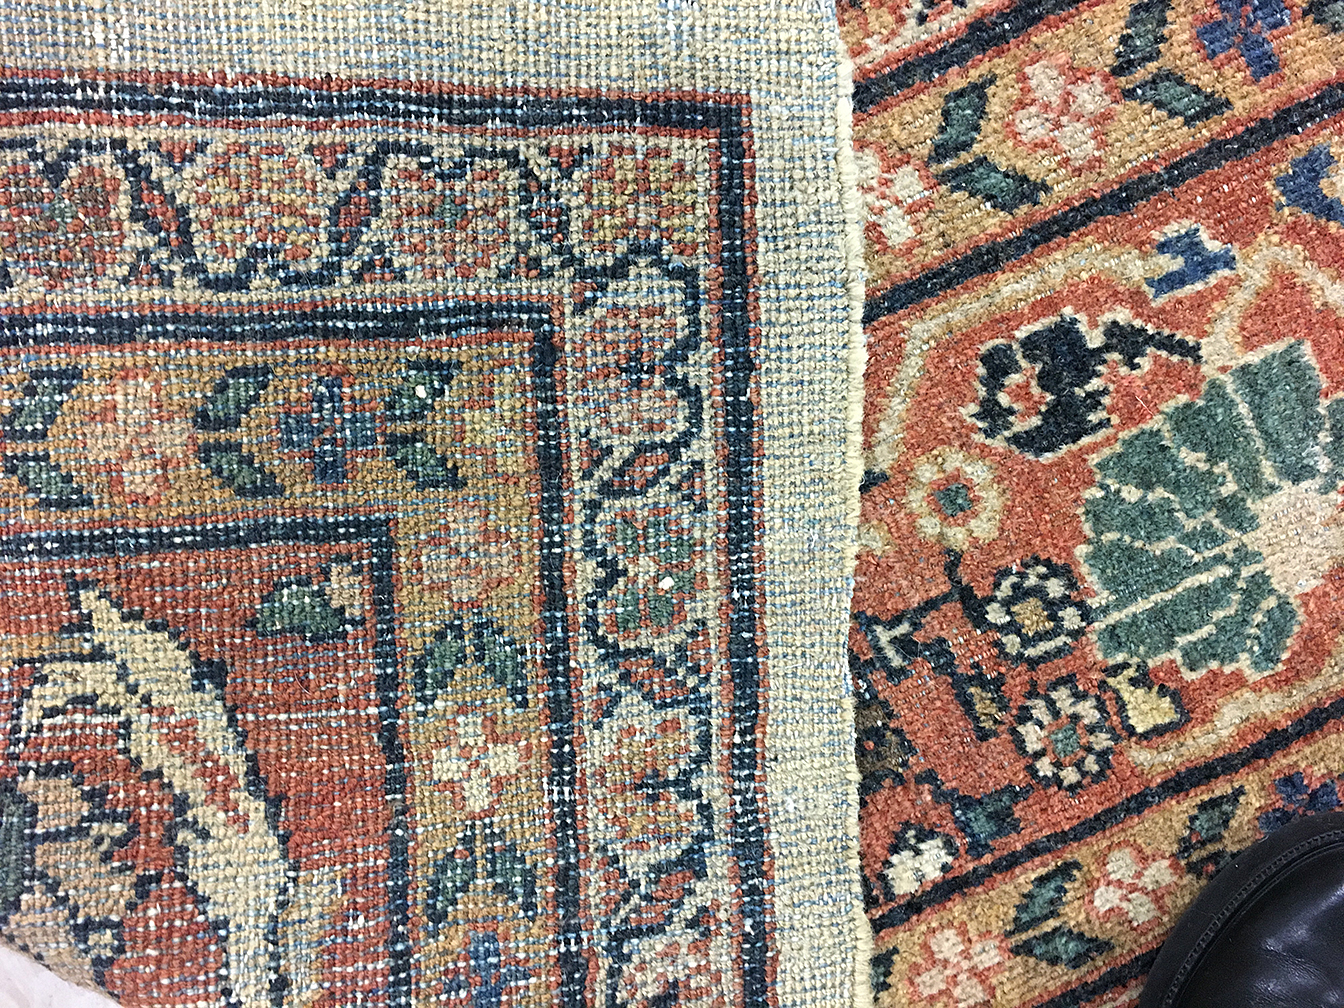 Antique mahal Carpet - # 55274